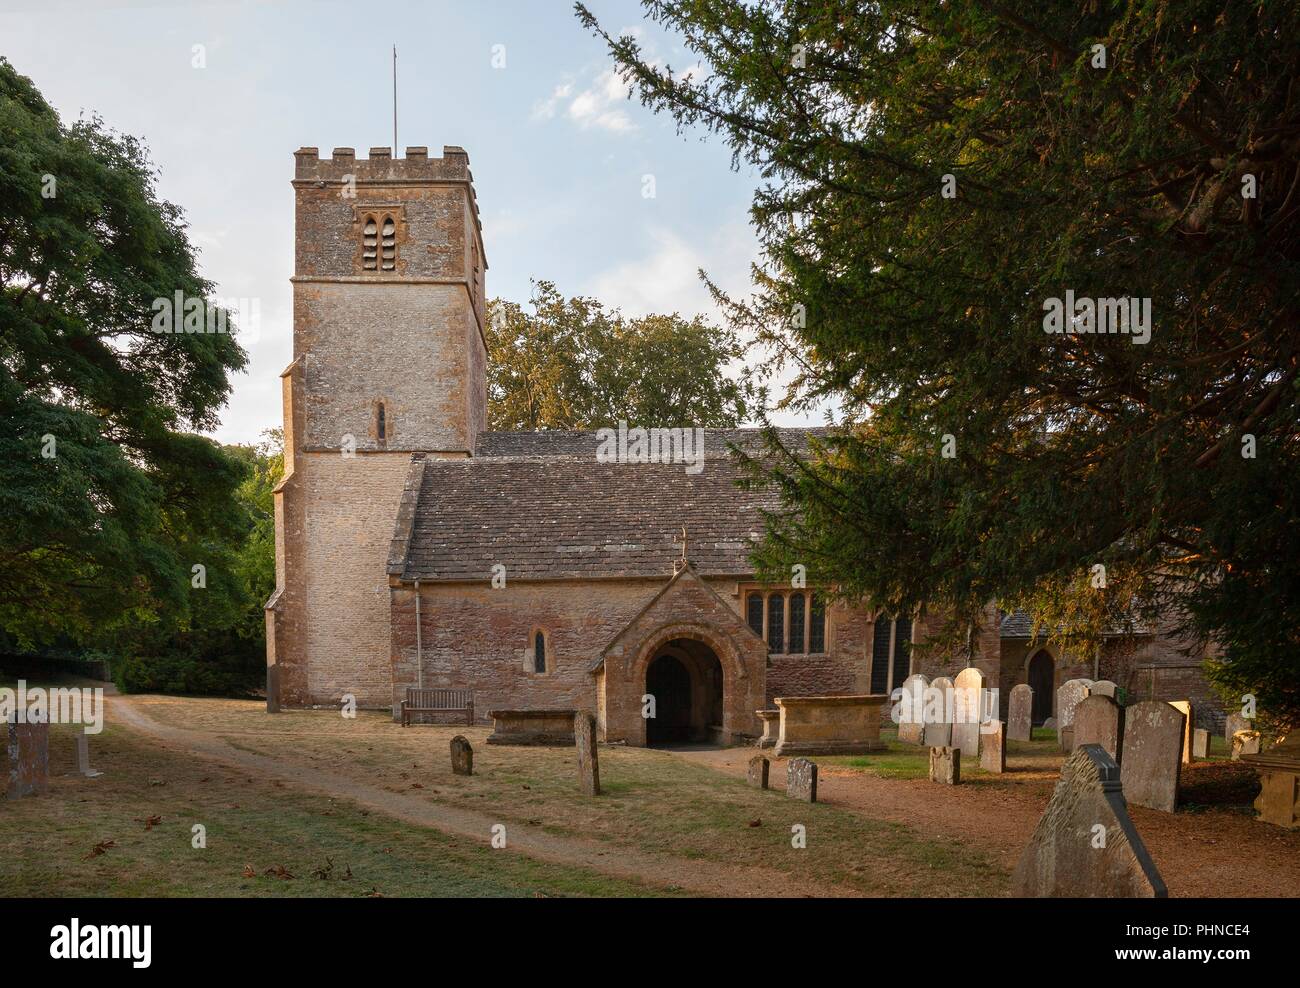 Église de Broadwell, village des Cotswolds, Gloucestershire, Angleterre. Banque D'Images